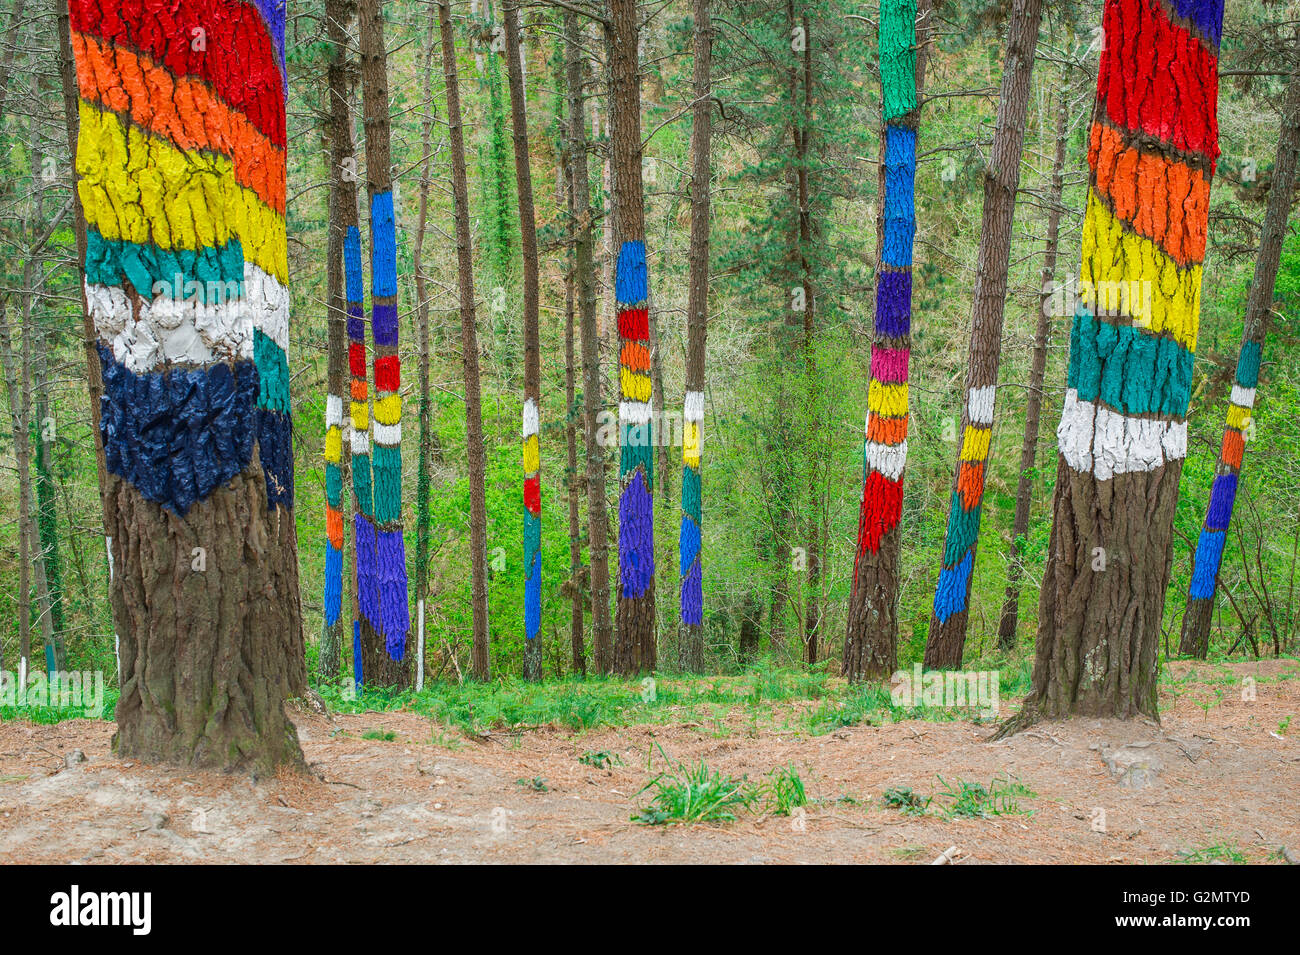 Troncs d'arbres peints, bois peint, El Bosque animado de Oma, artiste Agustín Ibarrola, Oma forêt, Pays Basque, Espagne Banque D'Images